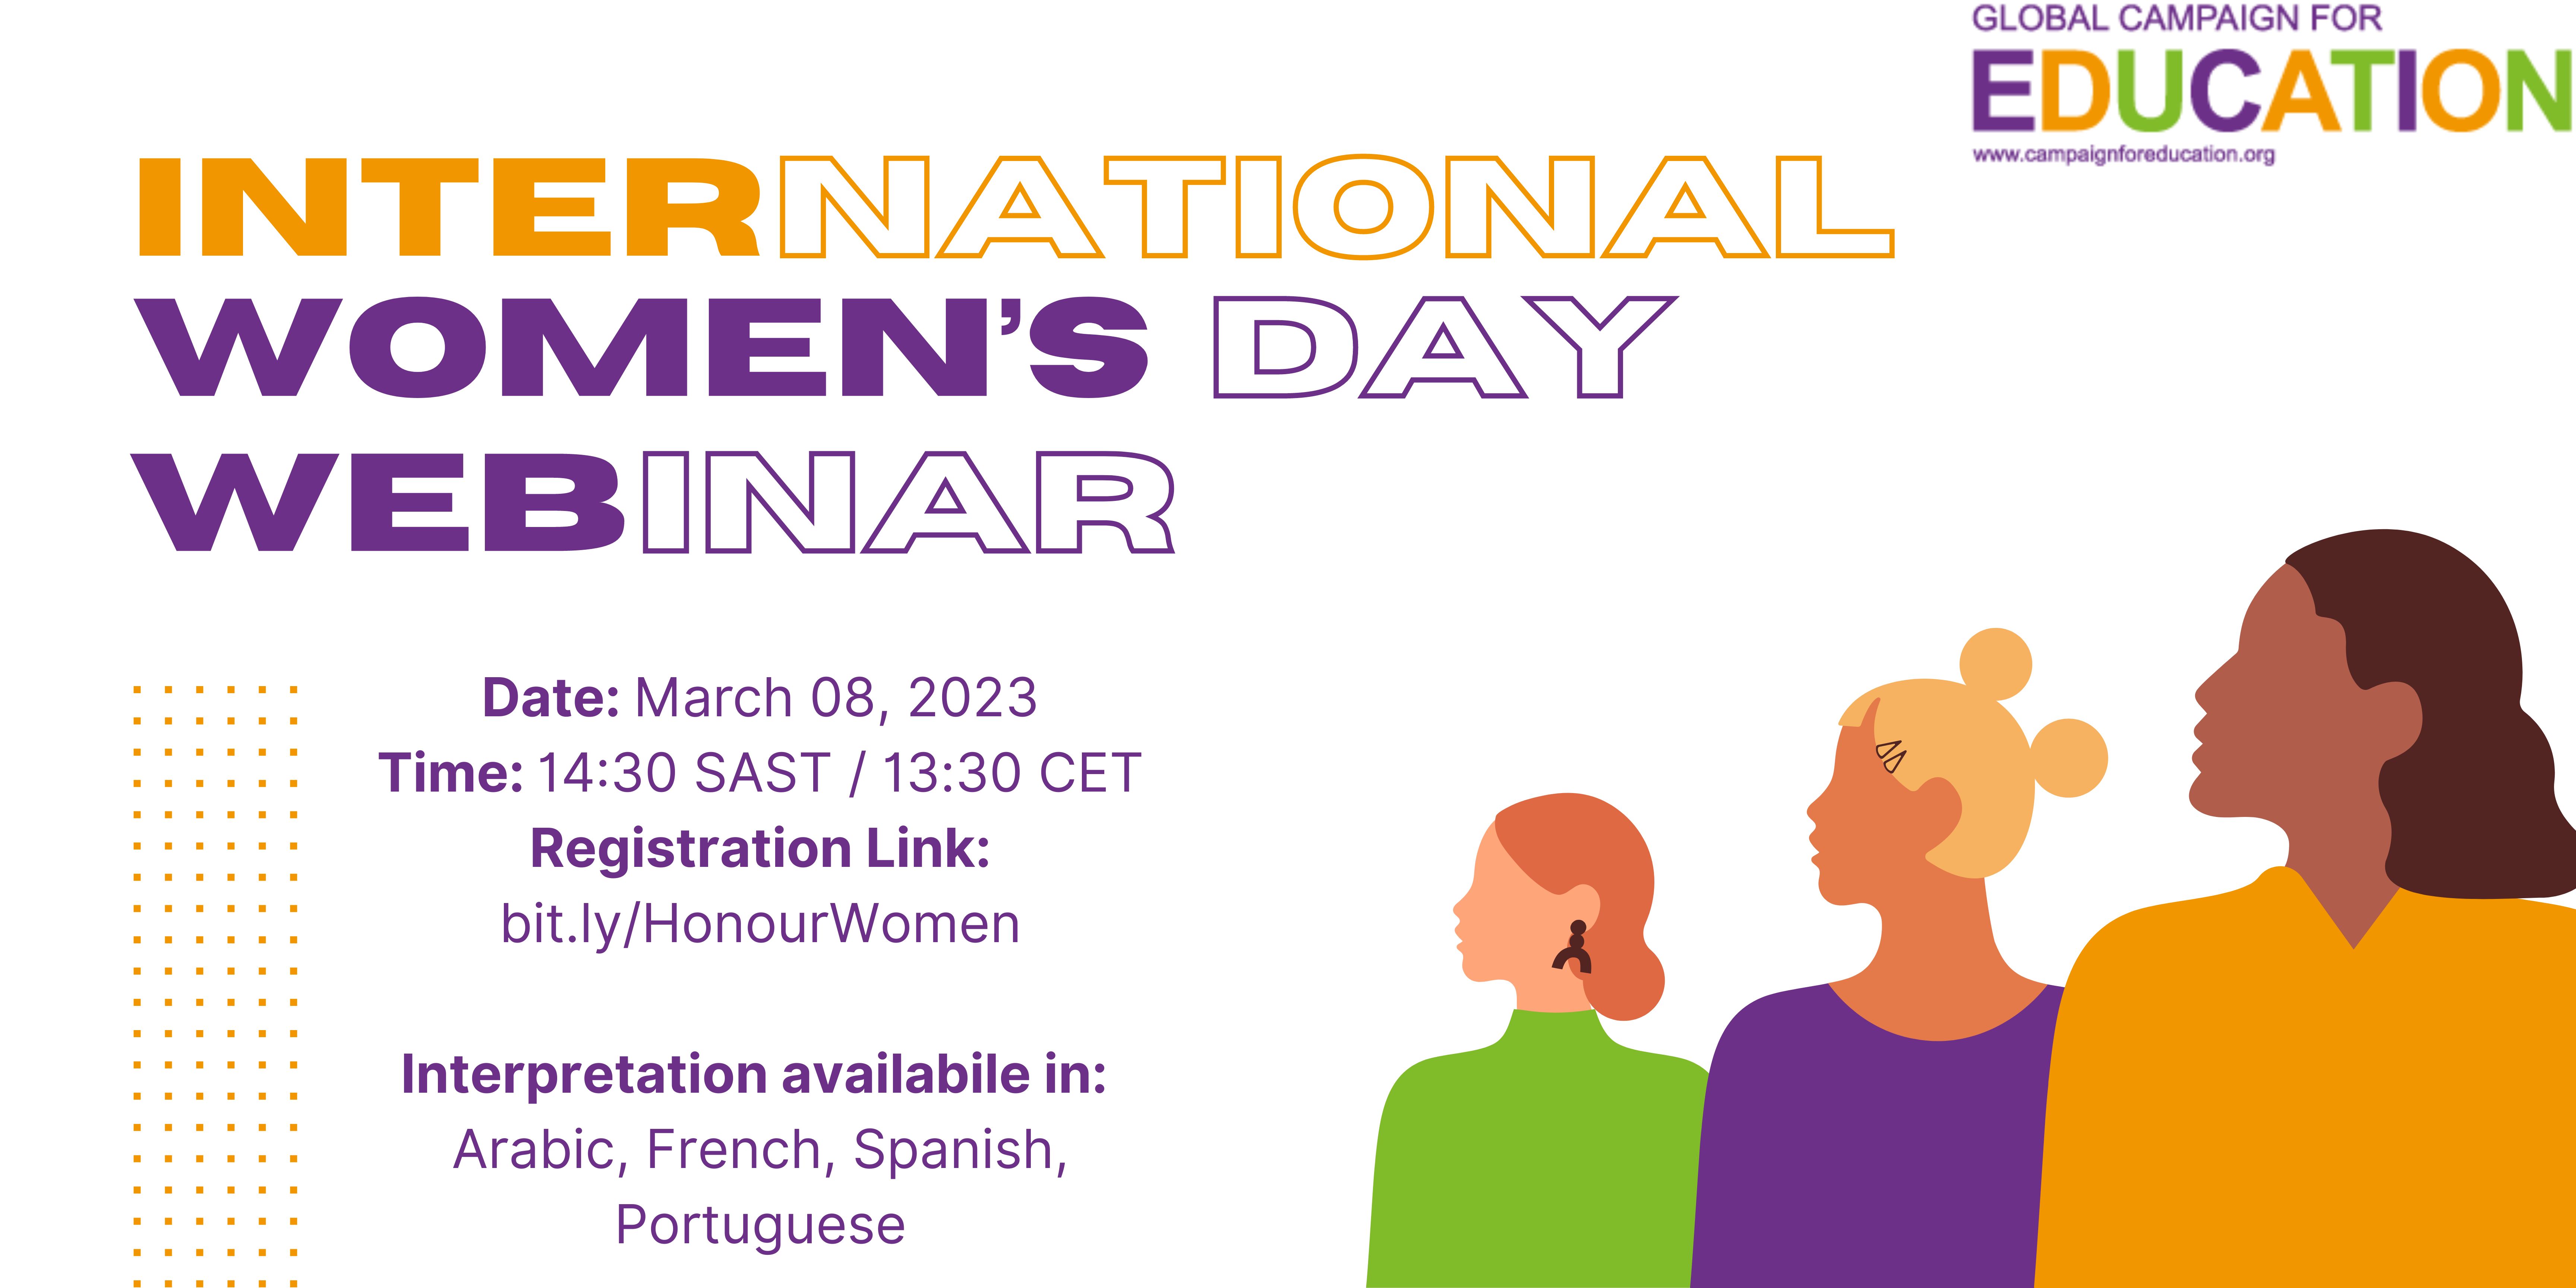 GCE International Women's Day Webinar